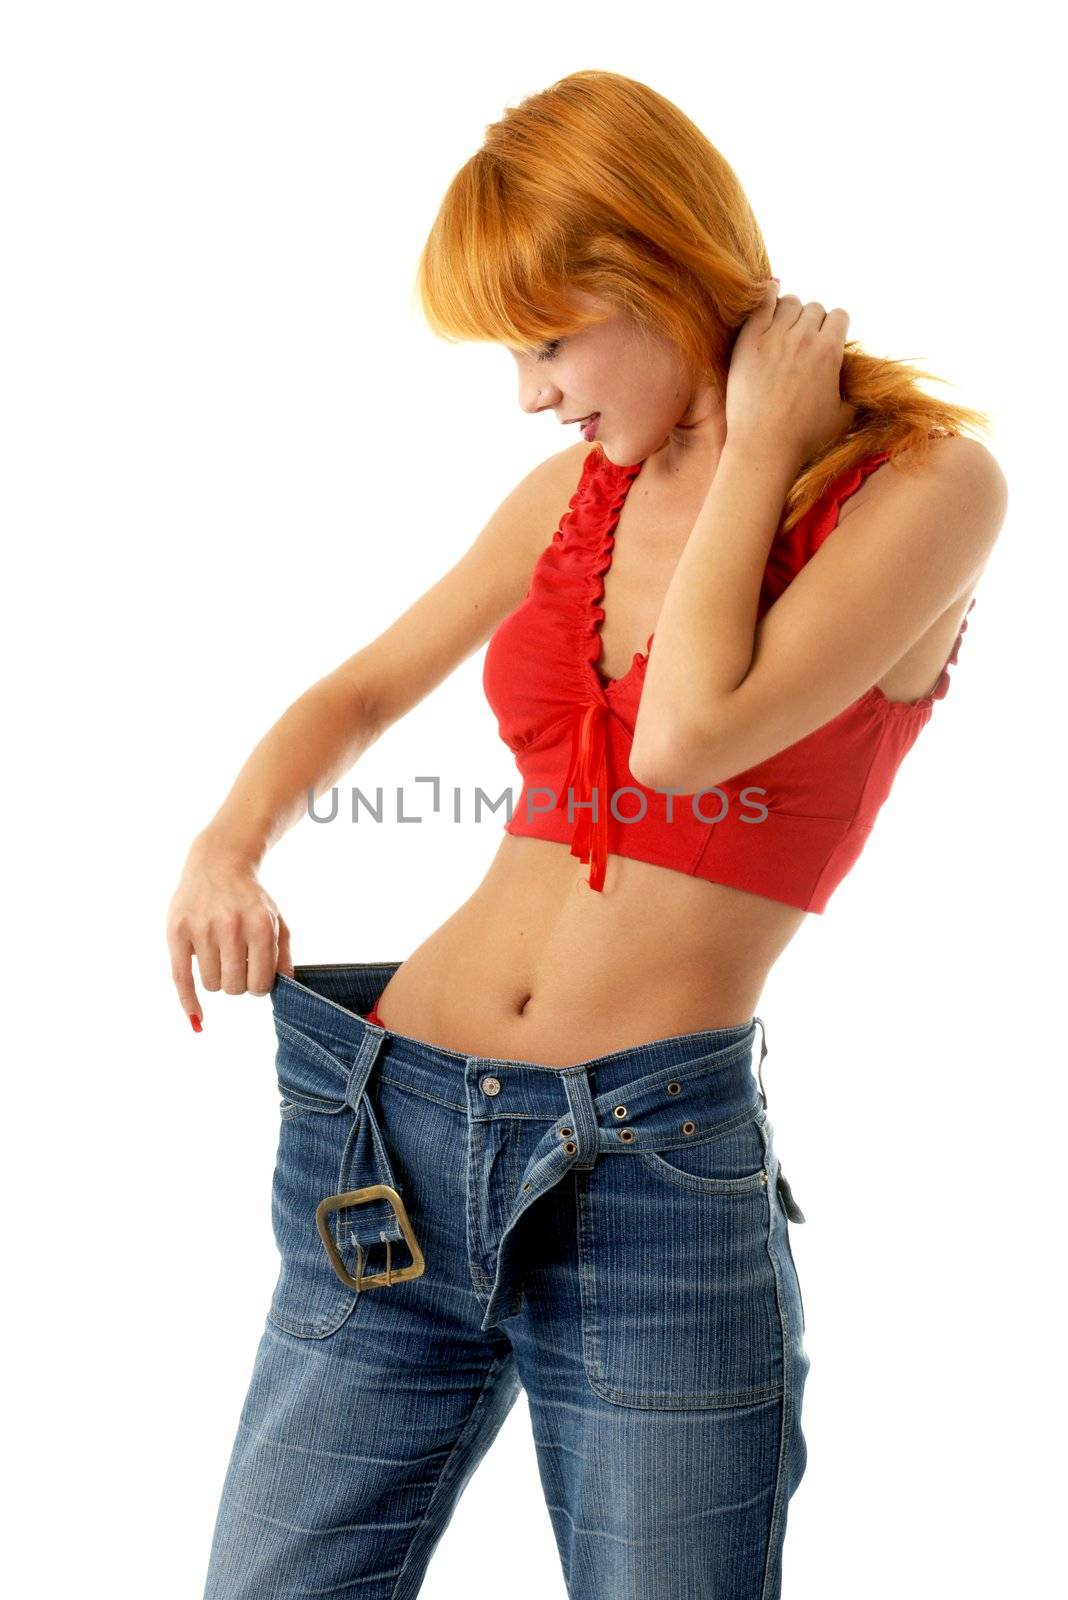 slim girl in big size jeans